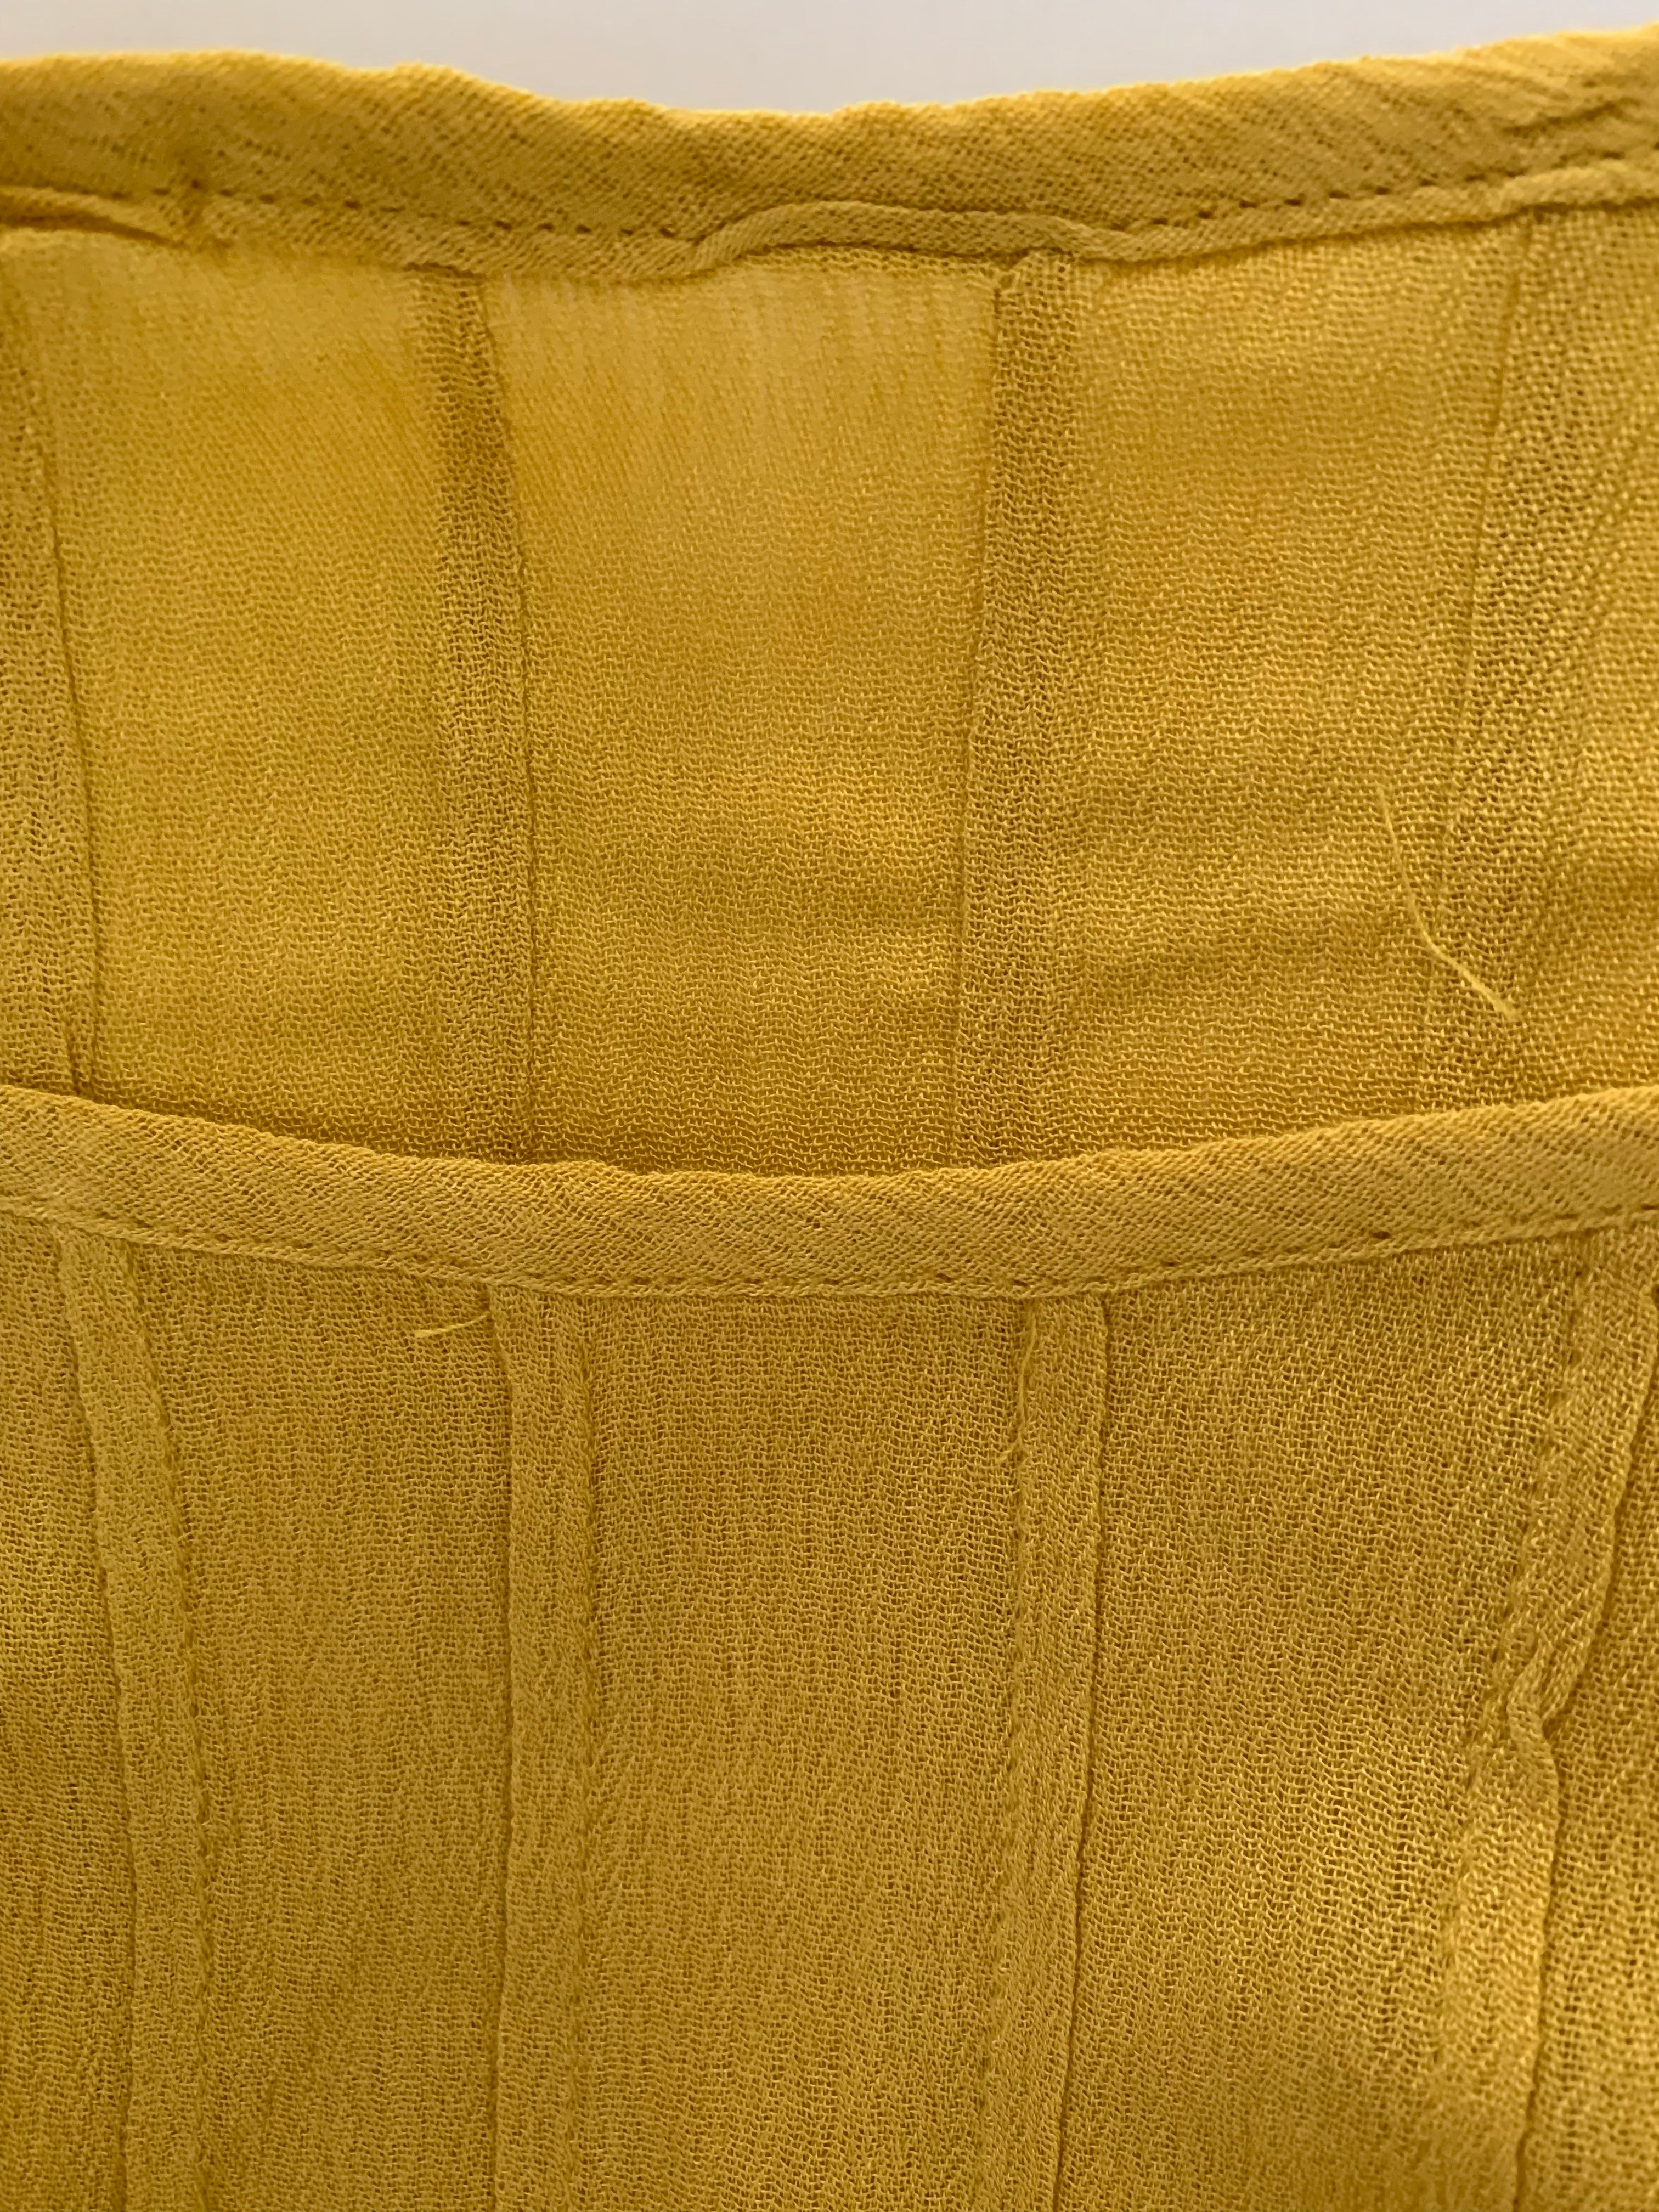 Mustard Yellow Pintuck Quarter Sleeve Top